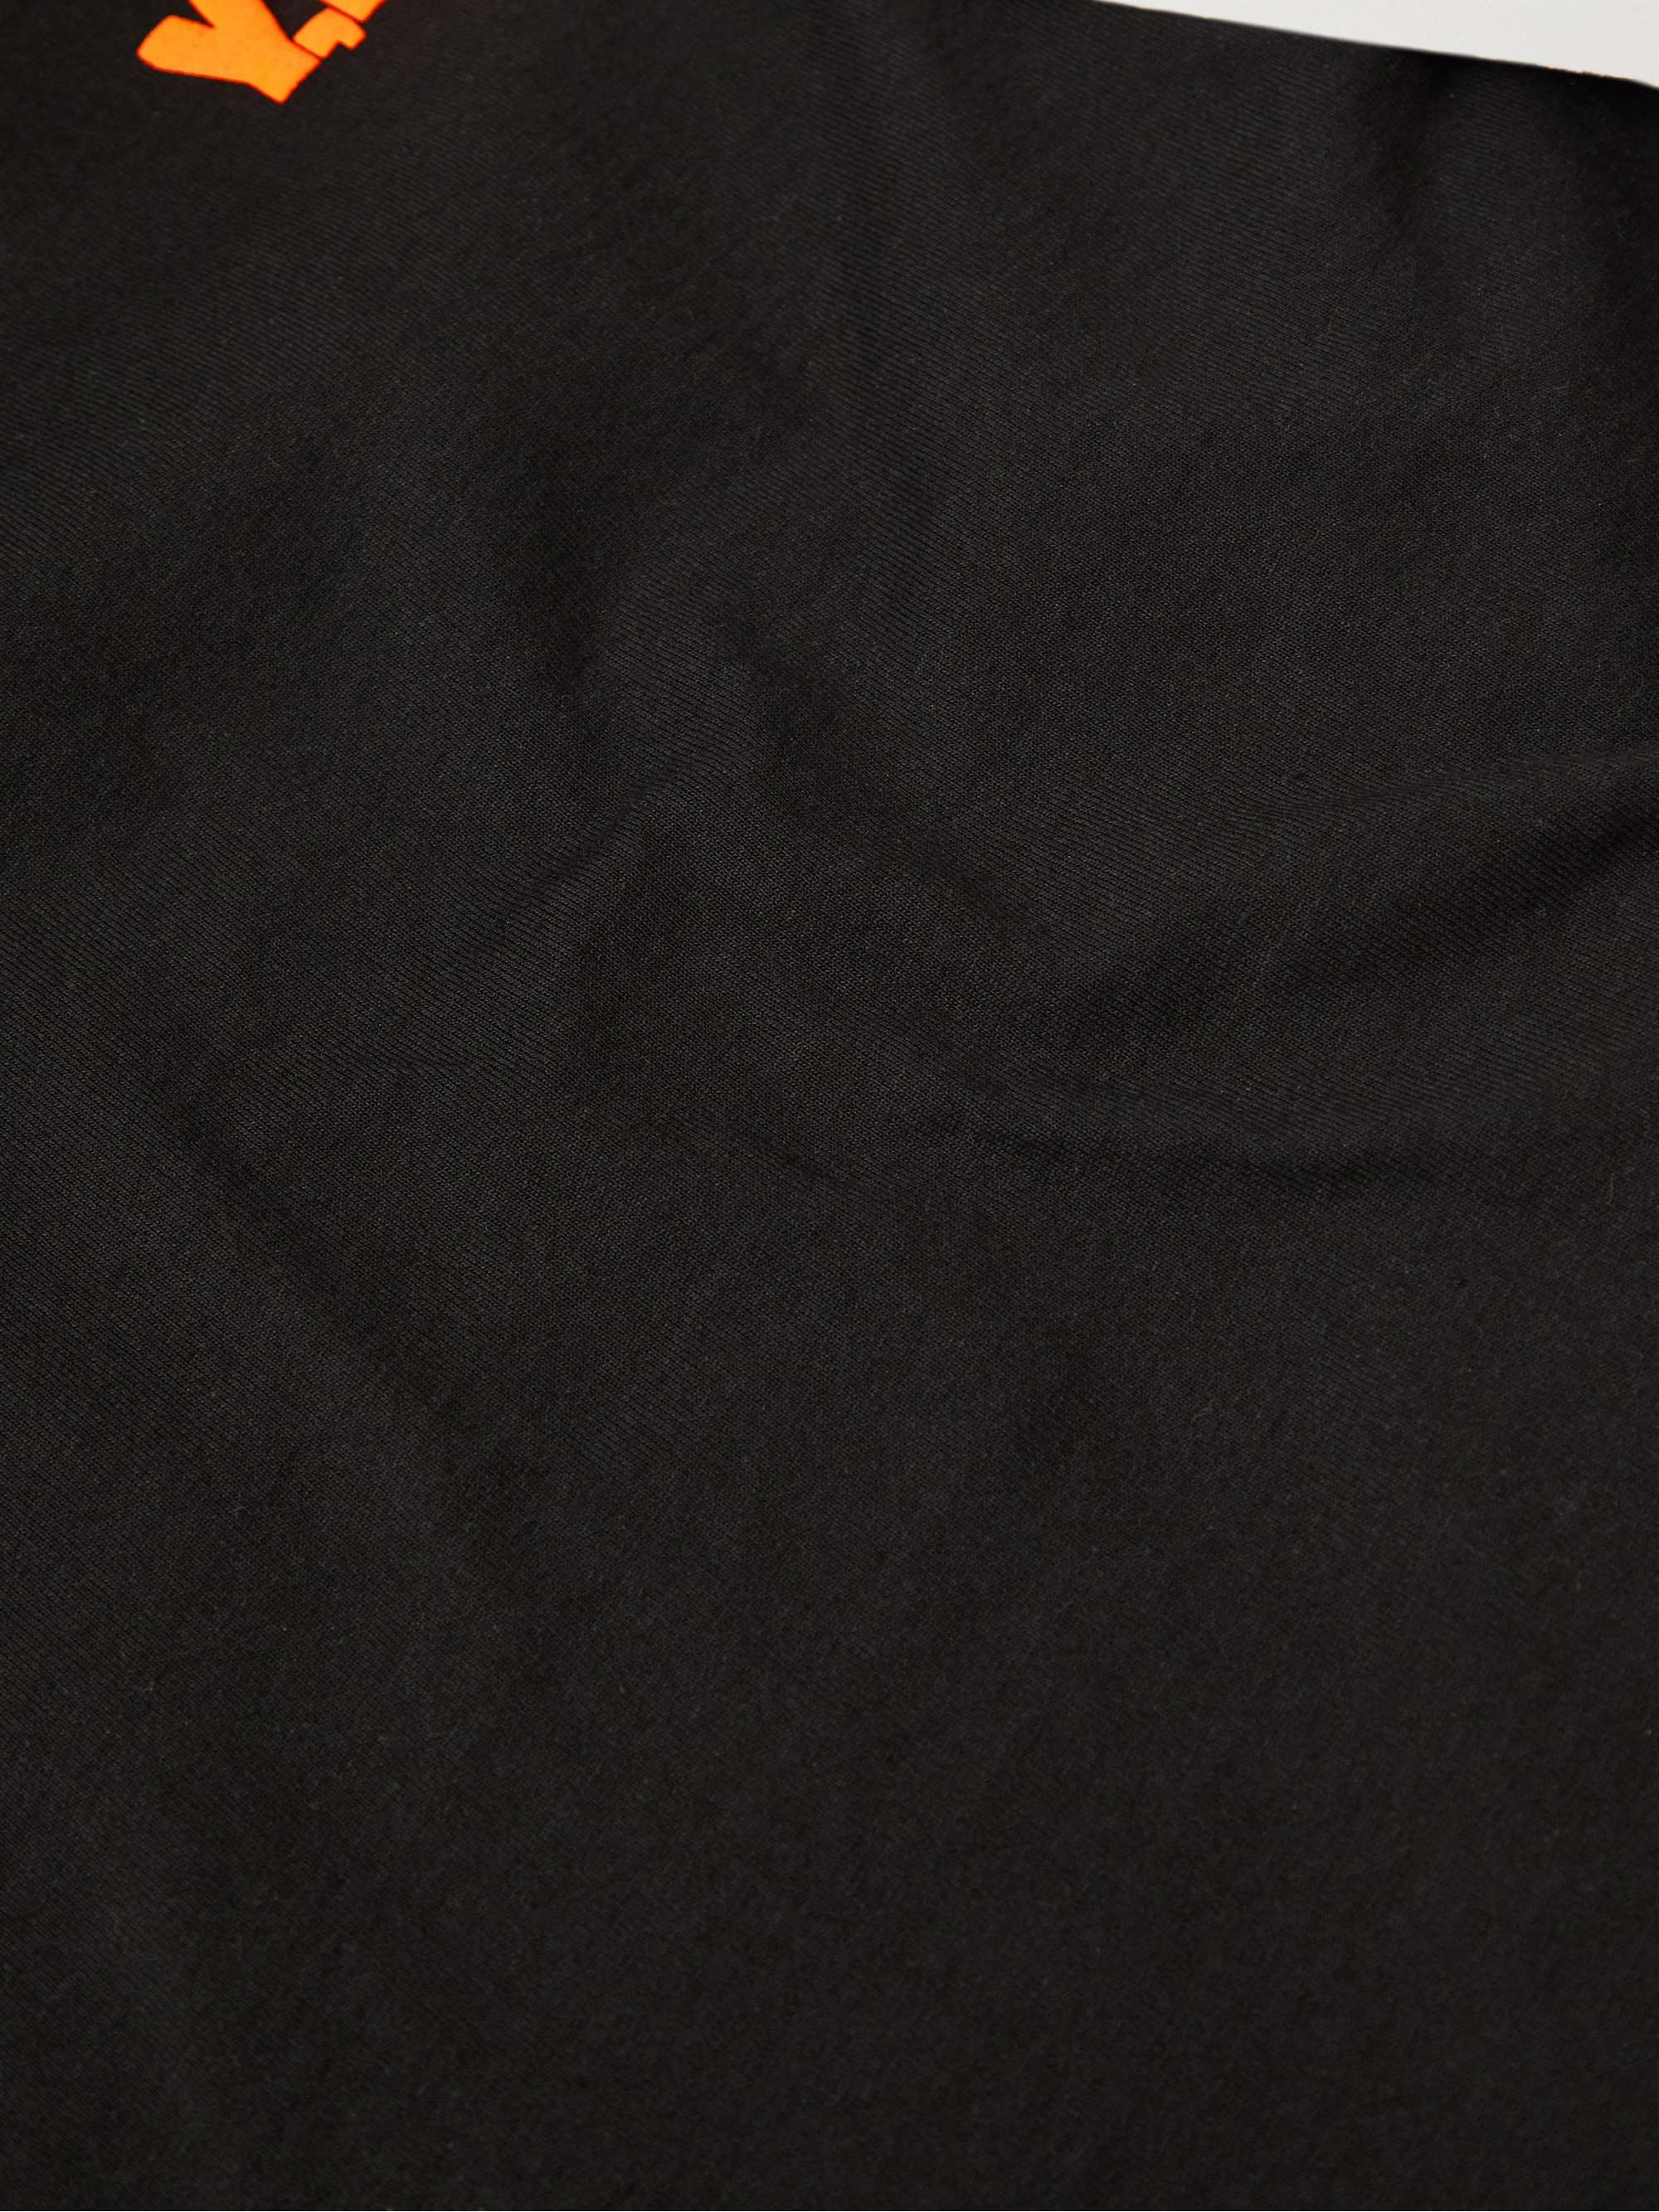 Y,IWO Cropped Logo-Print Cotton-Jersey T-Shirt